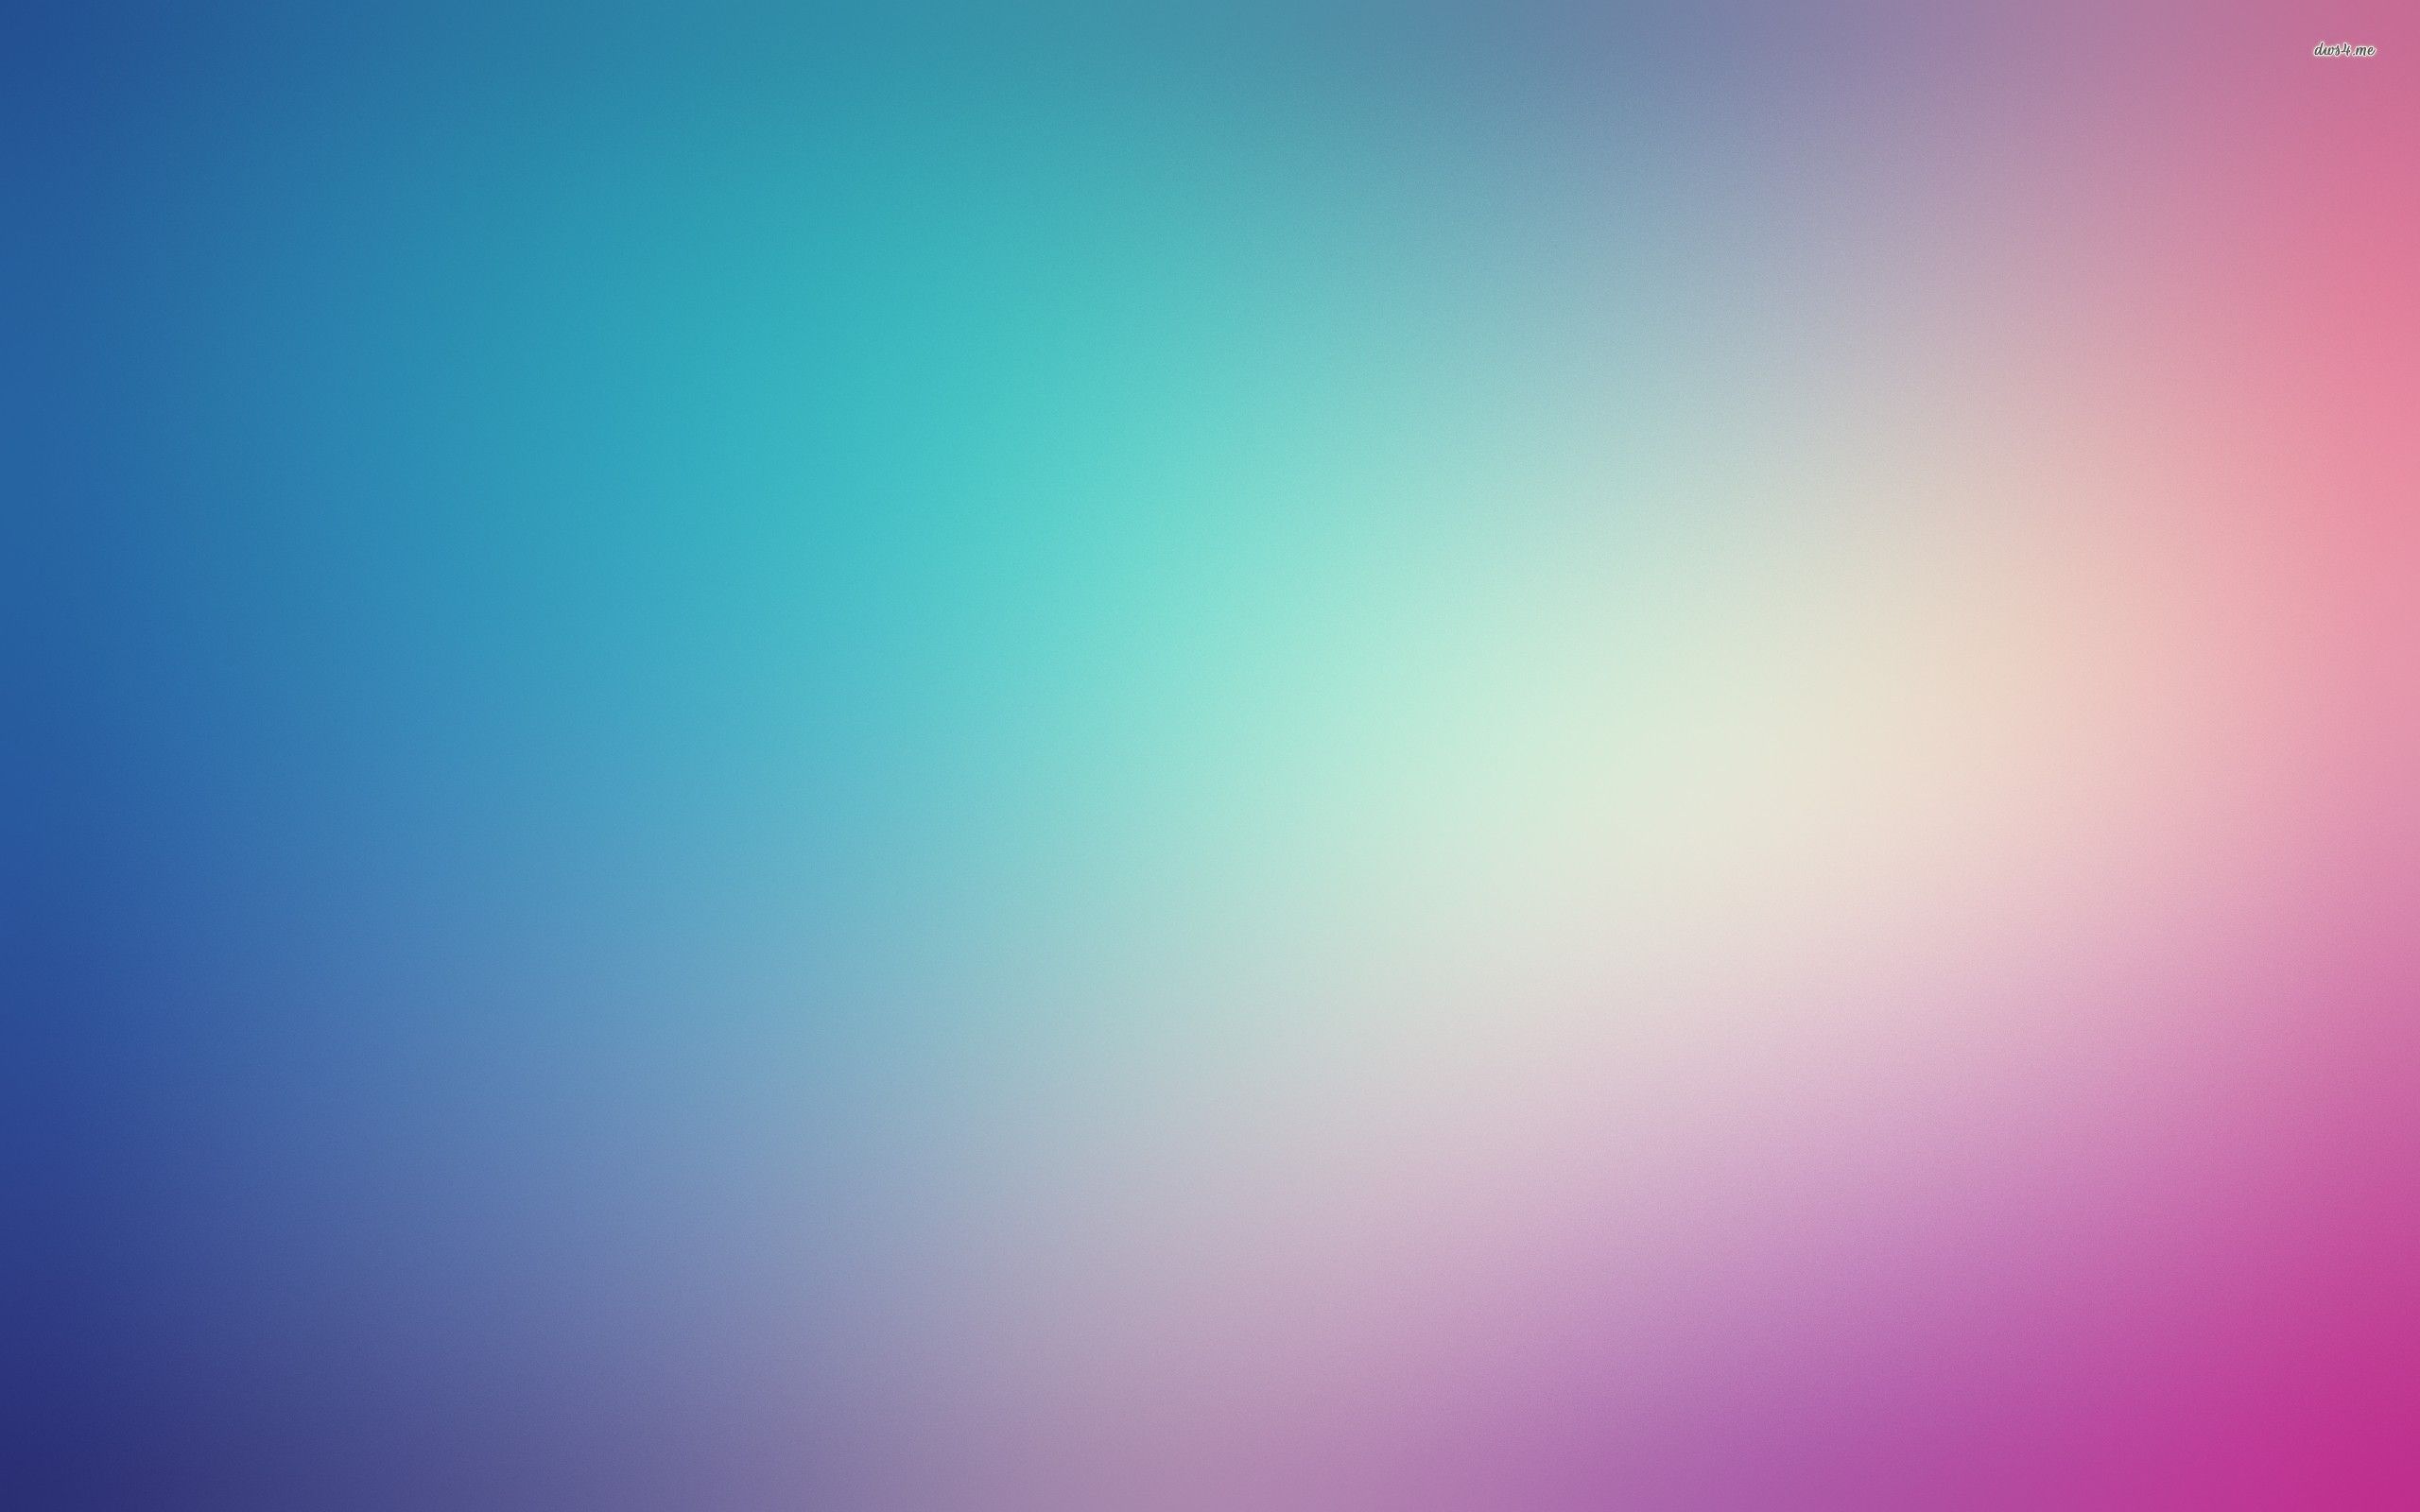 Blue gradien blur wallpaper - Abstract wallpapers